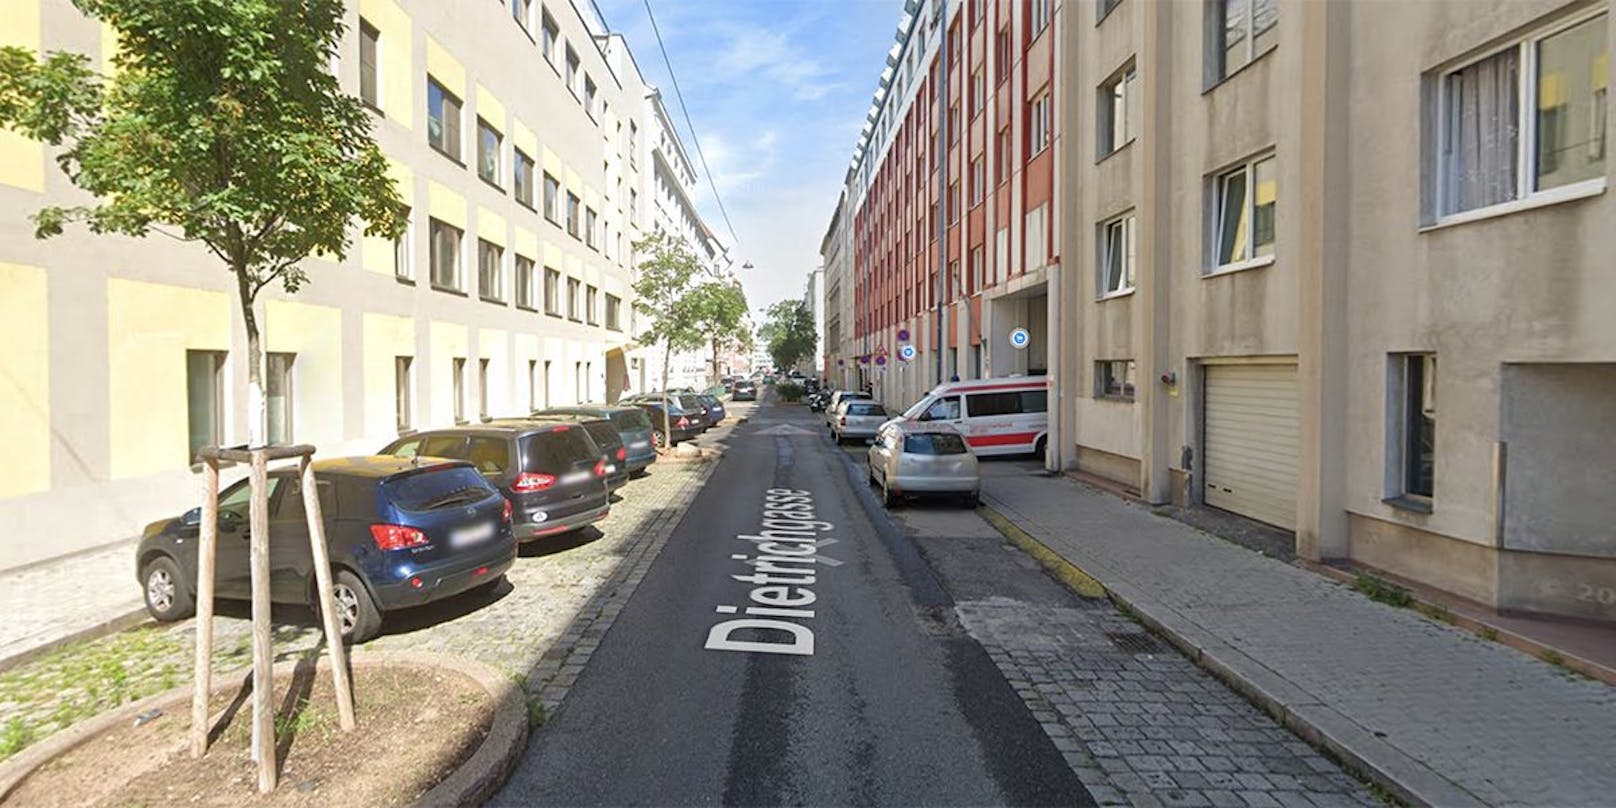 Seltsamer Einbruchsfall für die Wiener Polizei in der Dietrichgasse in Wien-Landstraße.